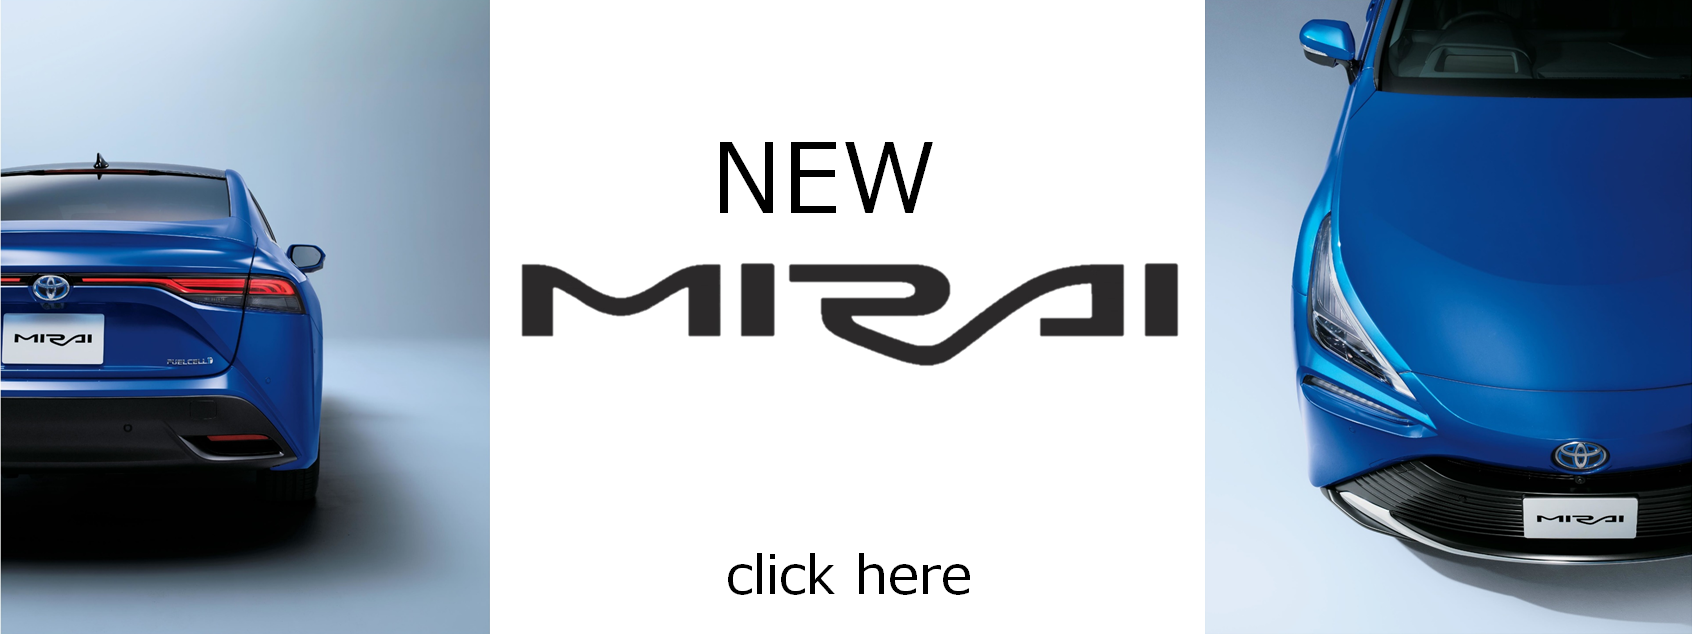 新型MIRAI登場2020.12